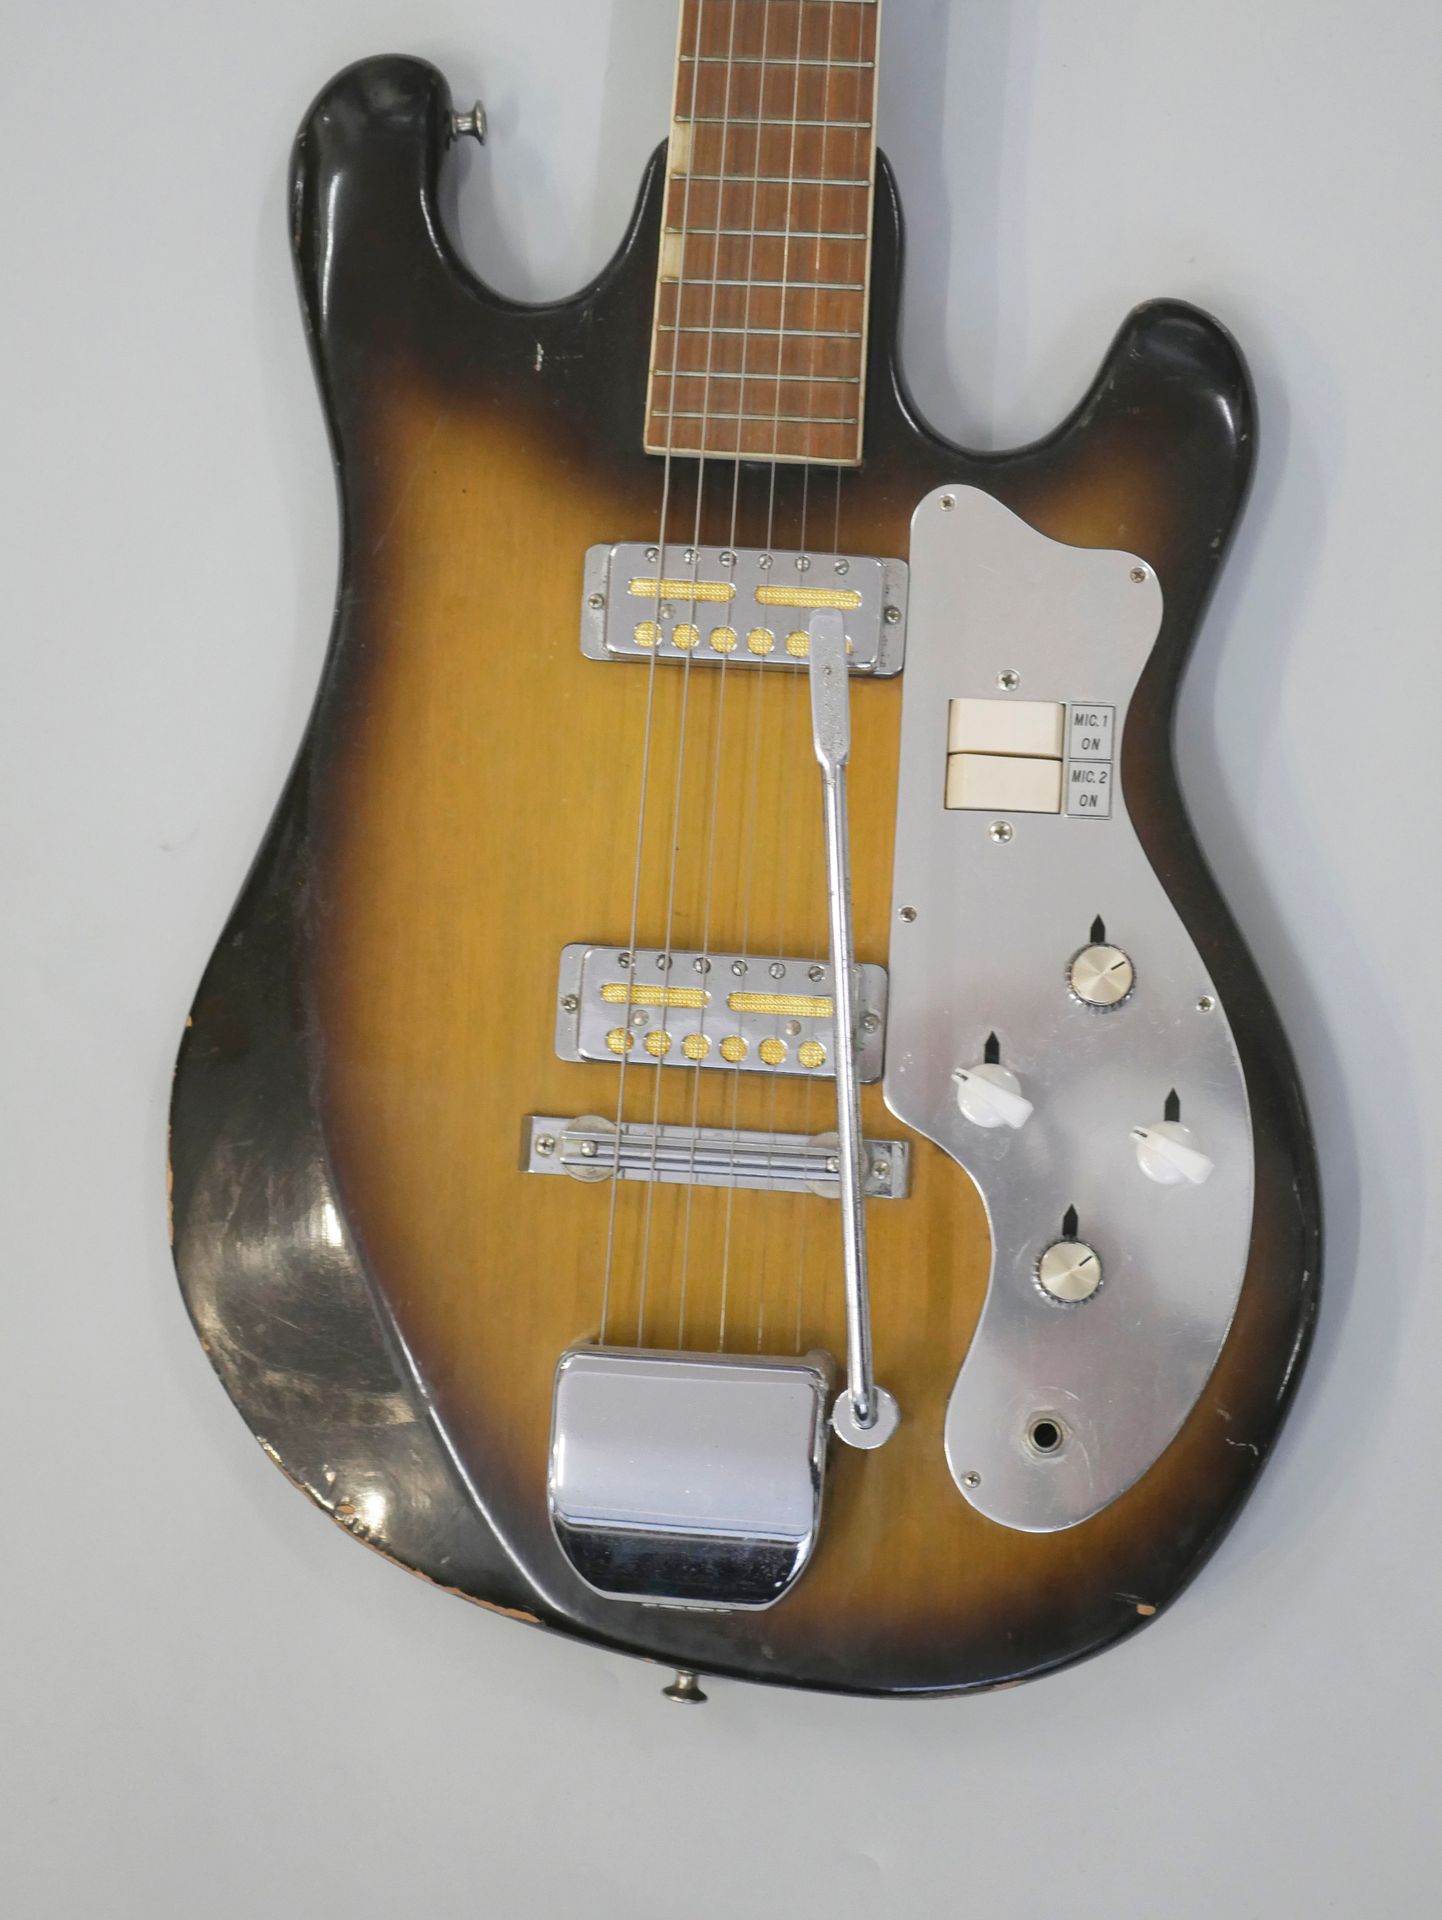 Null Guitarra eléctrica de cuerpo sólido Kent modelo 431, fabricada en Japón alr&hellip;